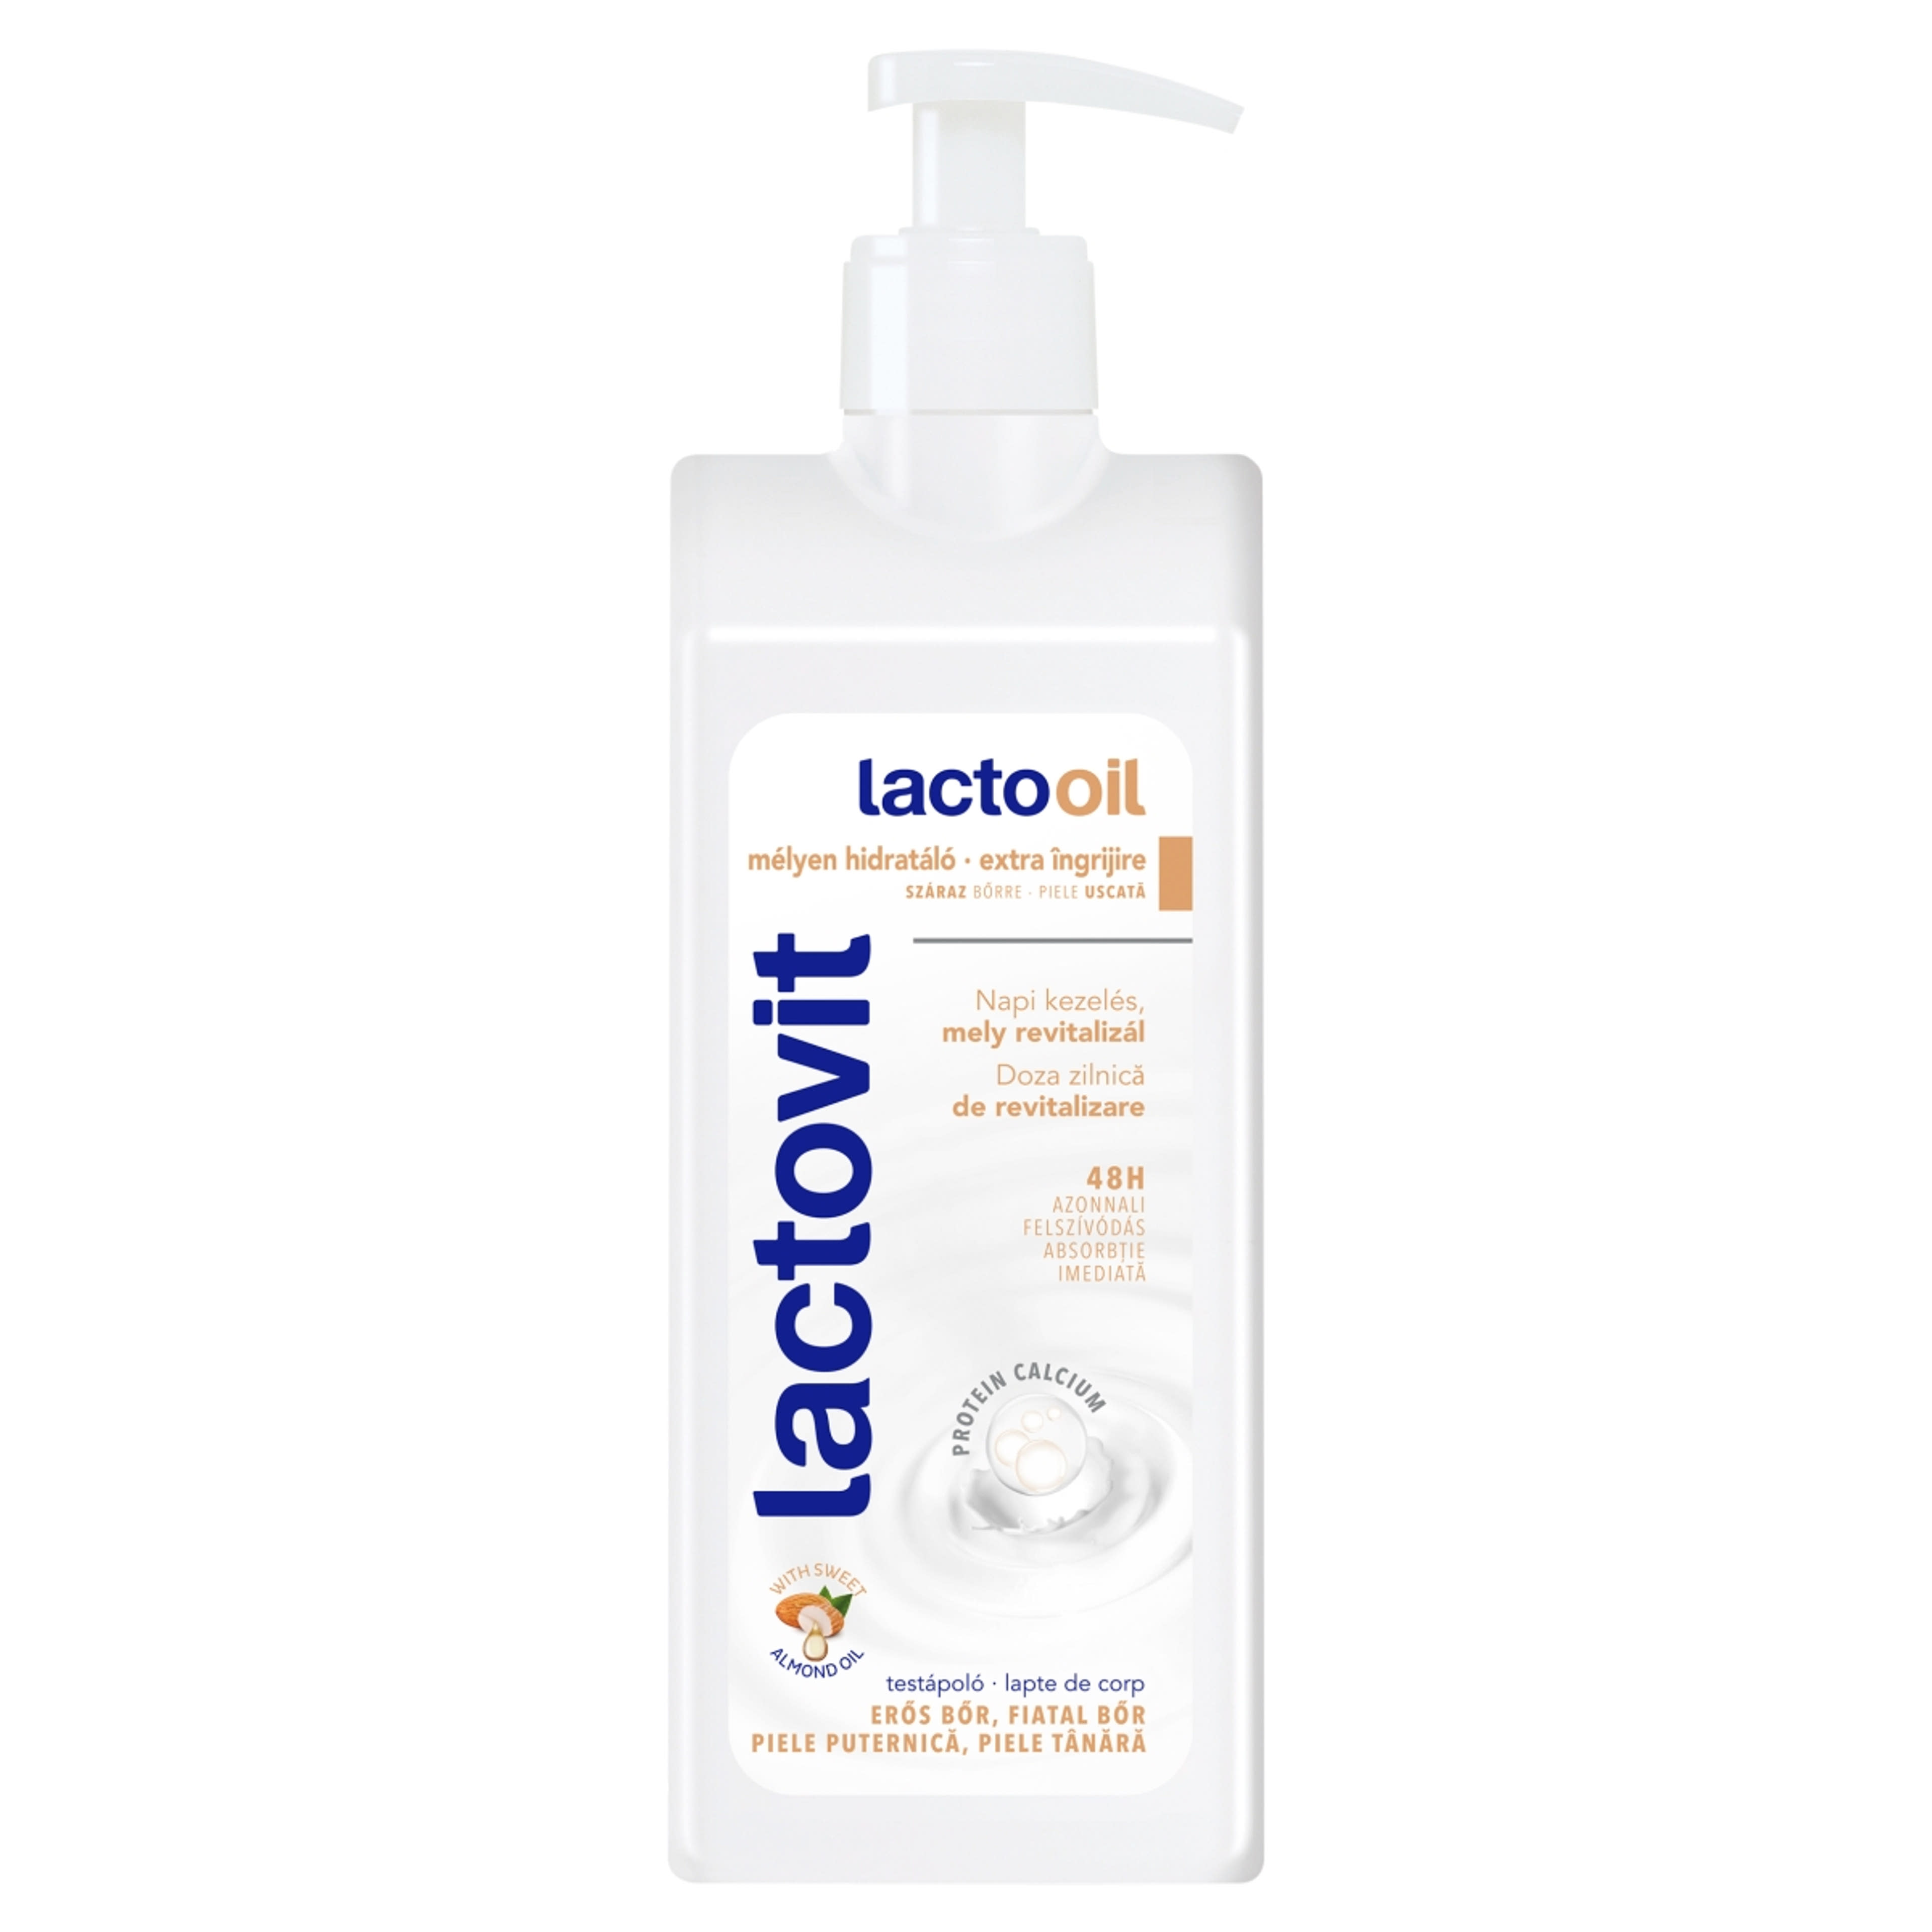 Lactovit lactooil testápoló - 400 ml-1